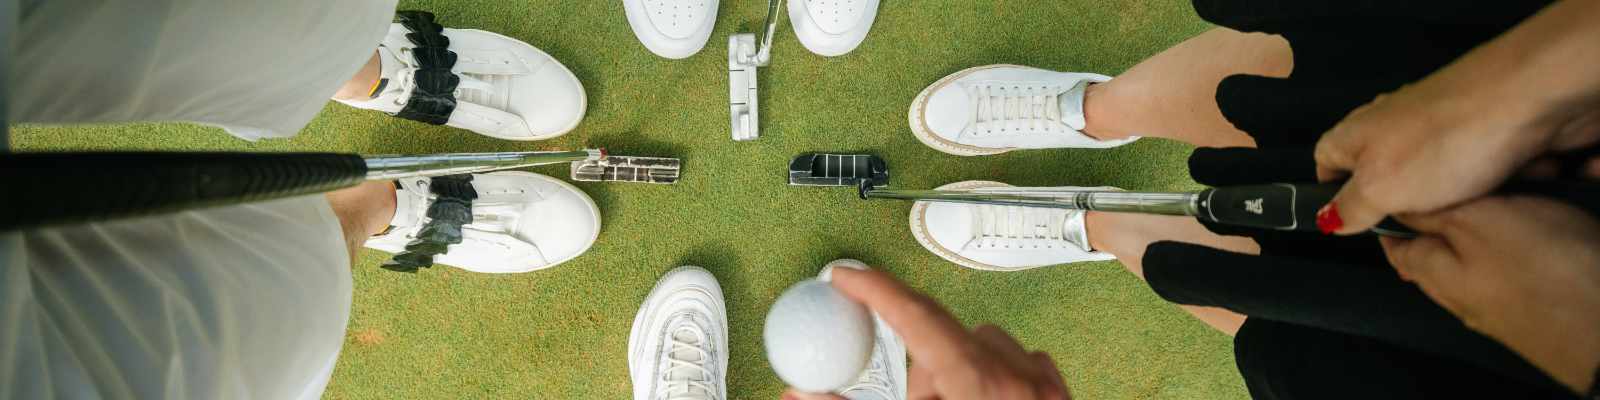 Golf Teams (photo by North Monaco / Shutterstock.com)